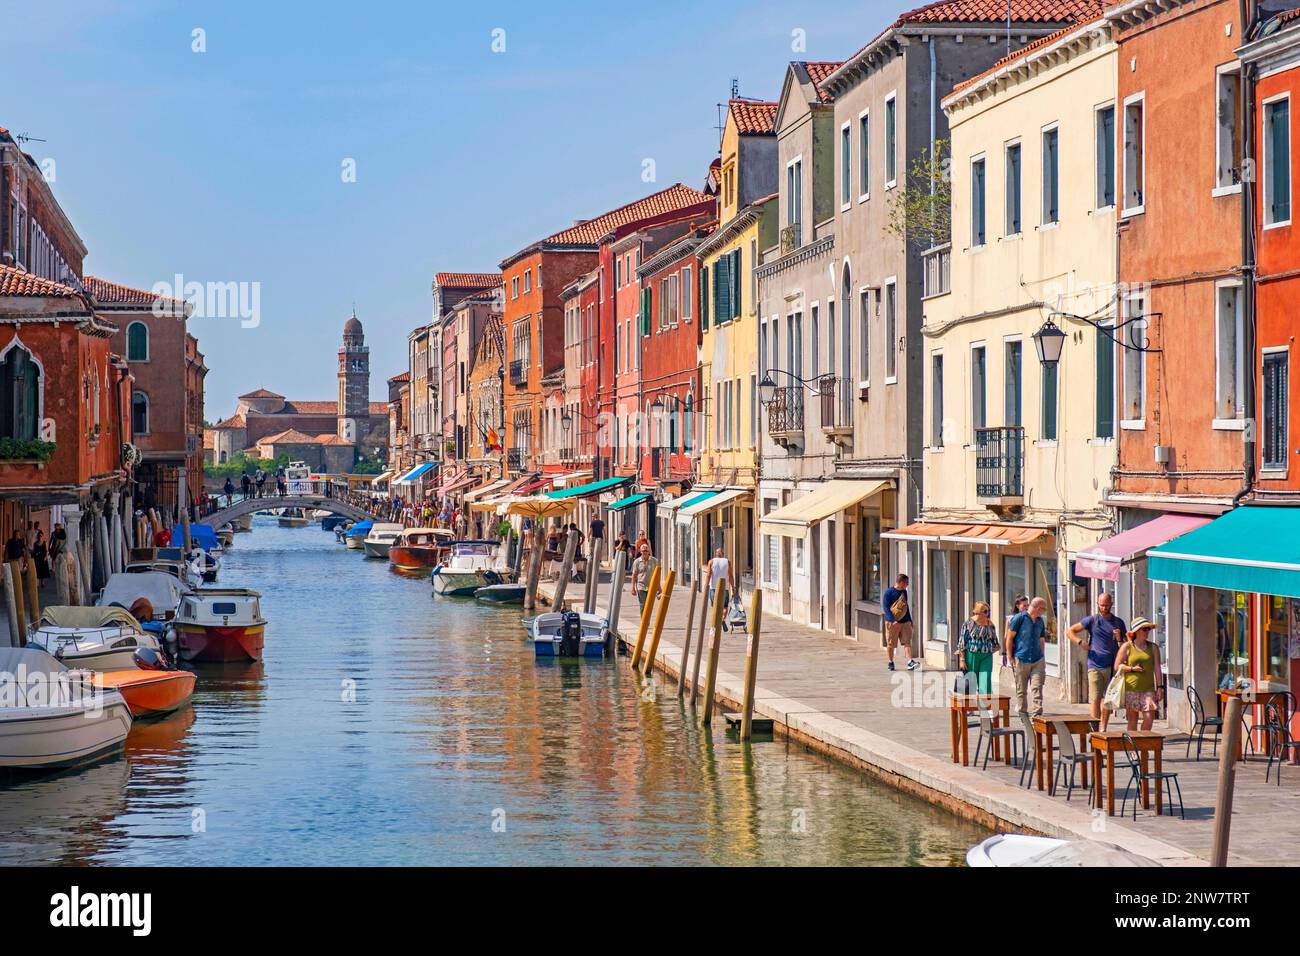 Touristen machen einen Spaziergang entlang des Kanals Rio dei Vetrai in Murano, der Insel, die für ihre Glasherstellung berühmt ist, in der Lagune von Venedig, Veneto, Norditalien Stockfoto